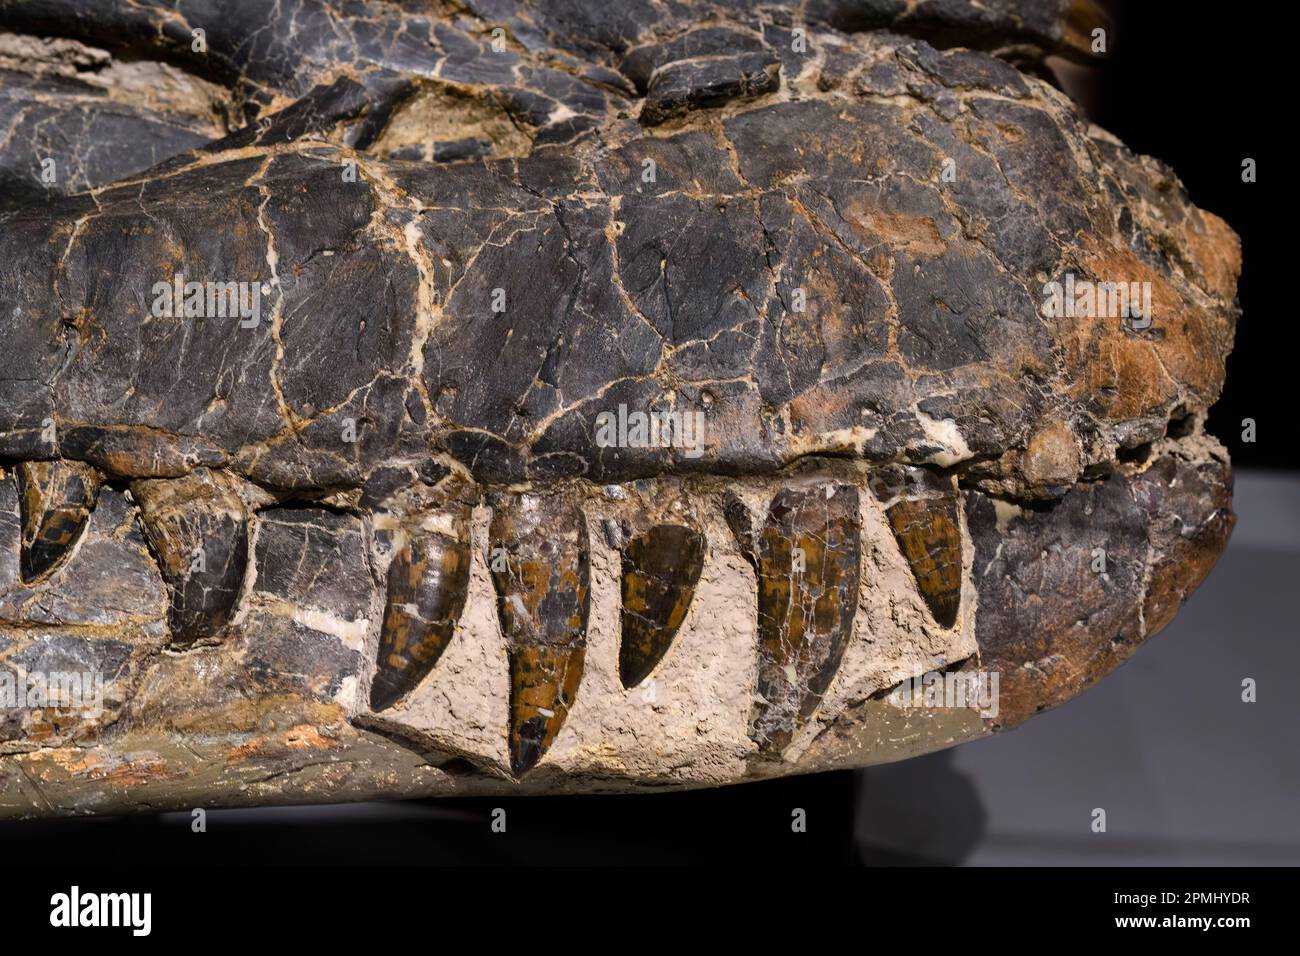 Crâne fossile d'un Albertosaurus. L'ancien os montre les dents de l'animal éteint. Exposition au Musée royal de l'Ontario ( ROM) Banque D'Images